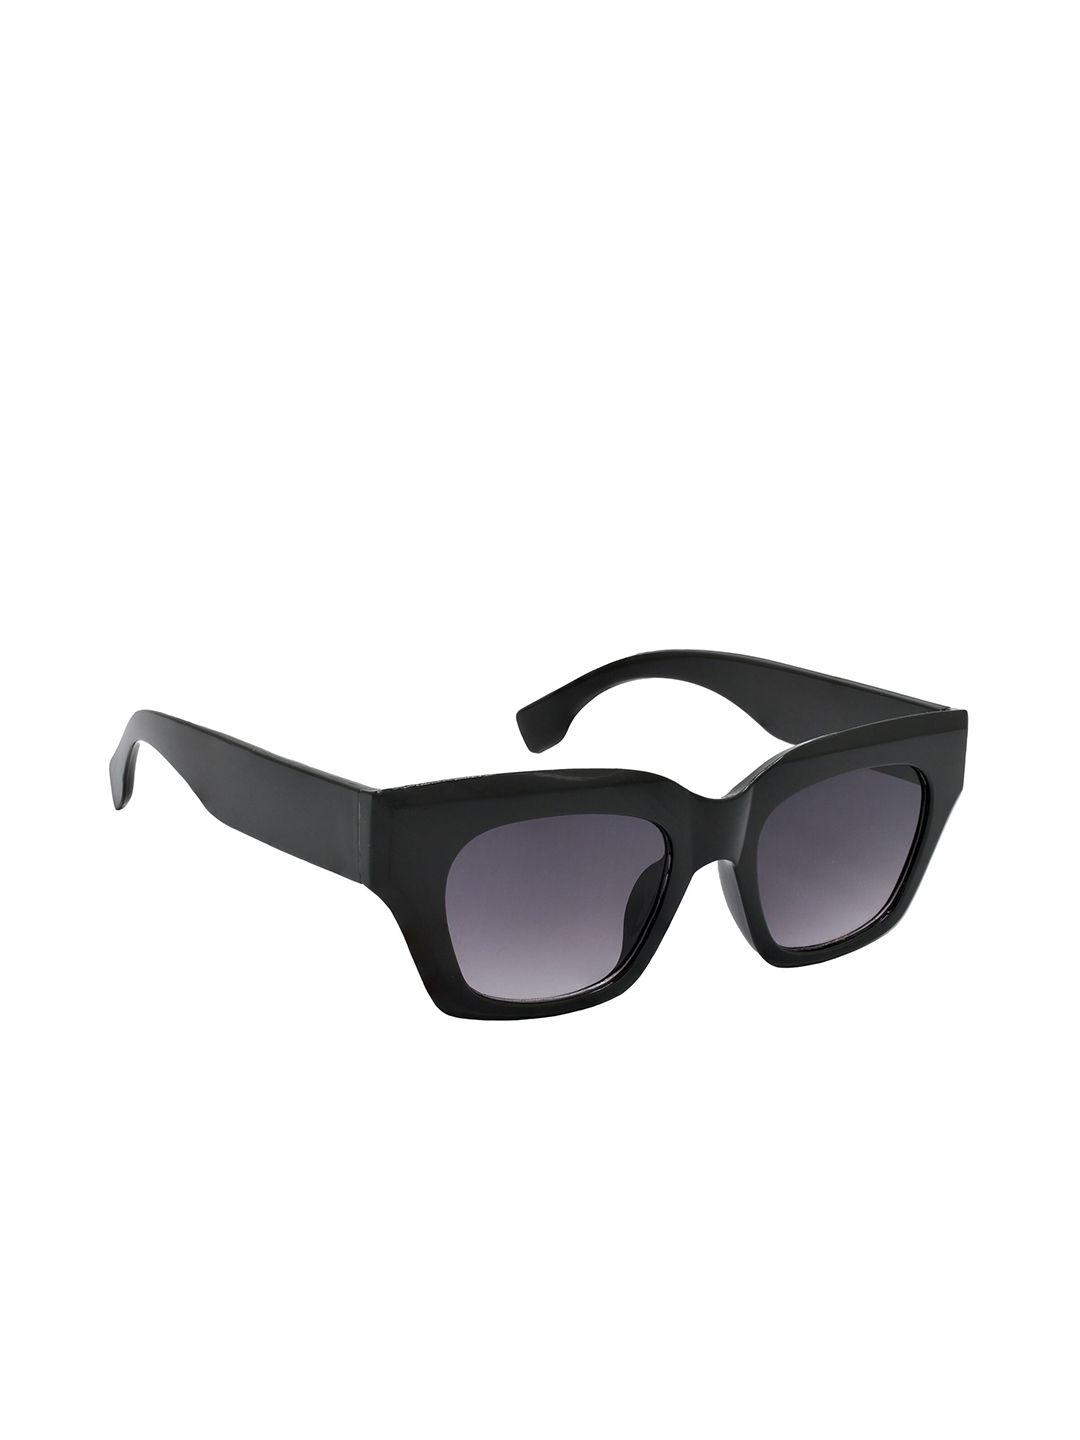 hrinkar-women-oversized-sunglasses-with-uv-protected-lens-hrs587